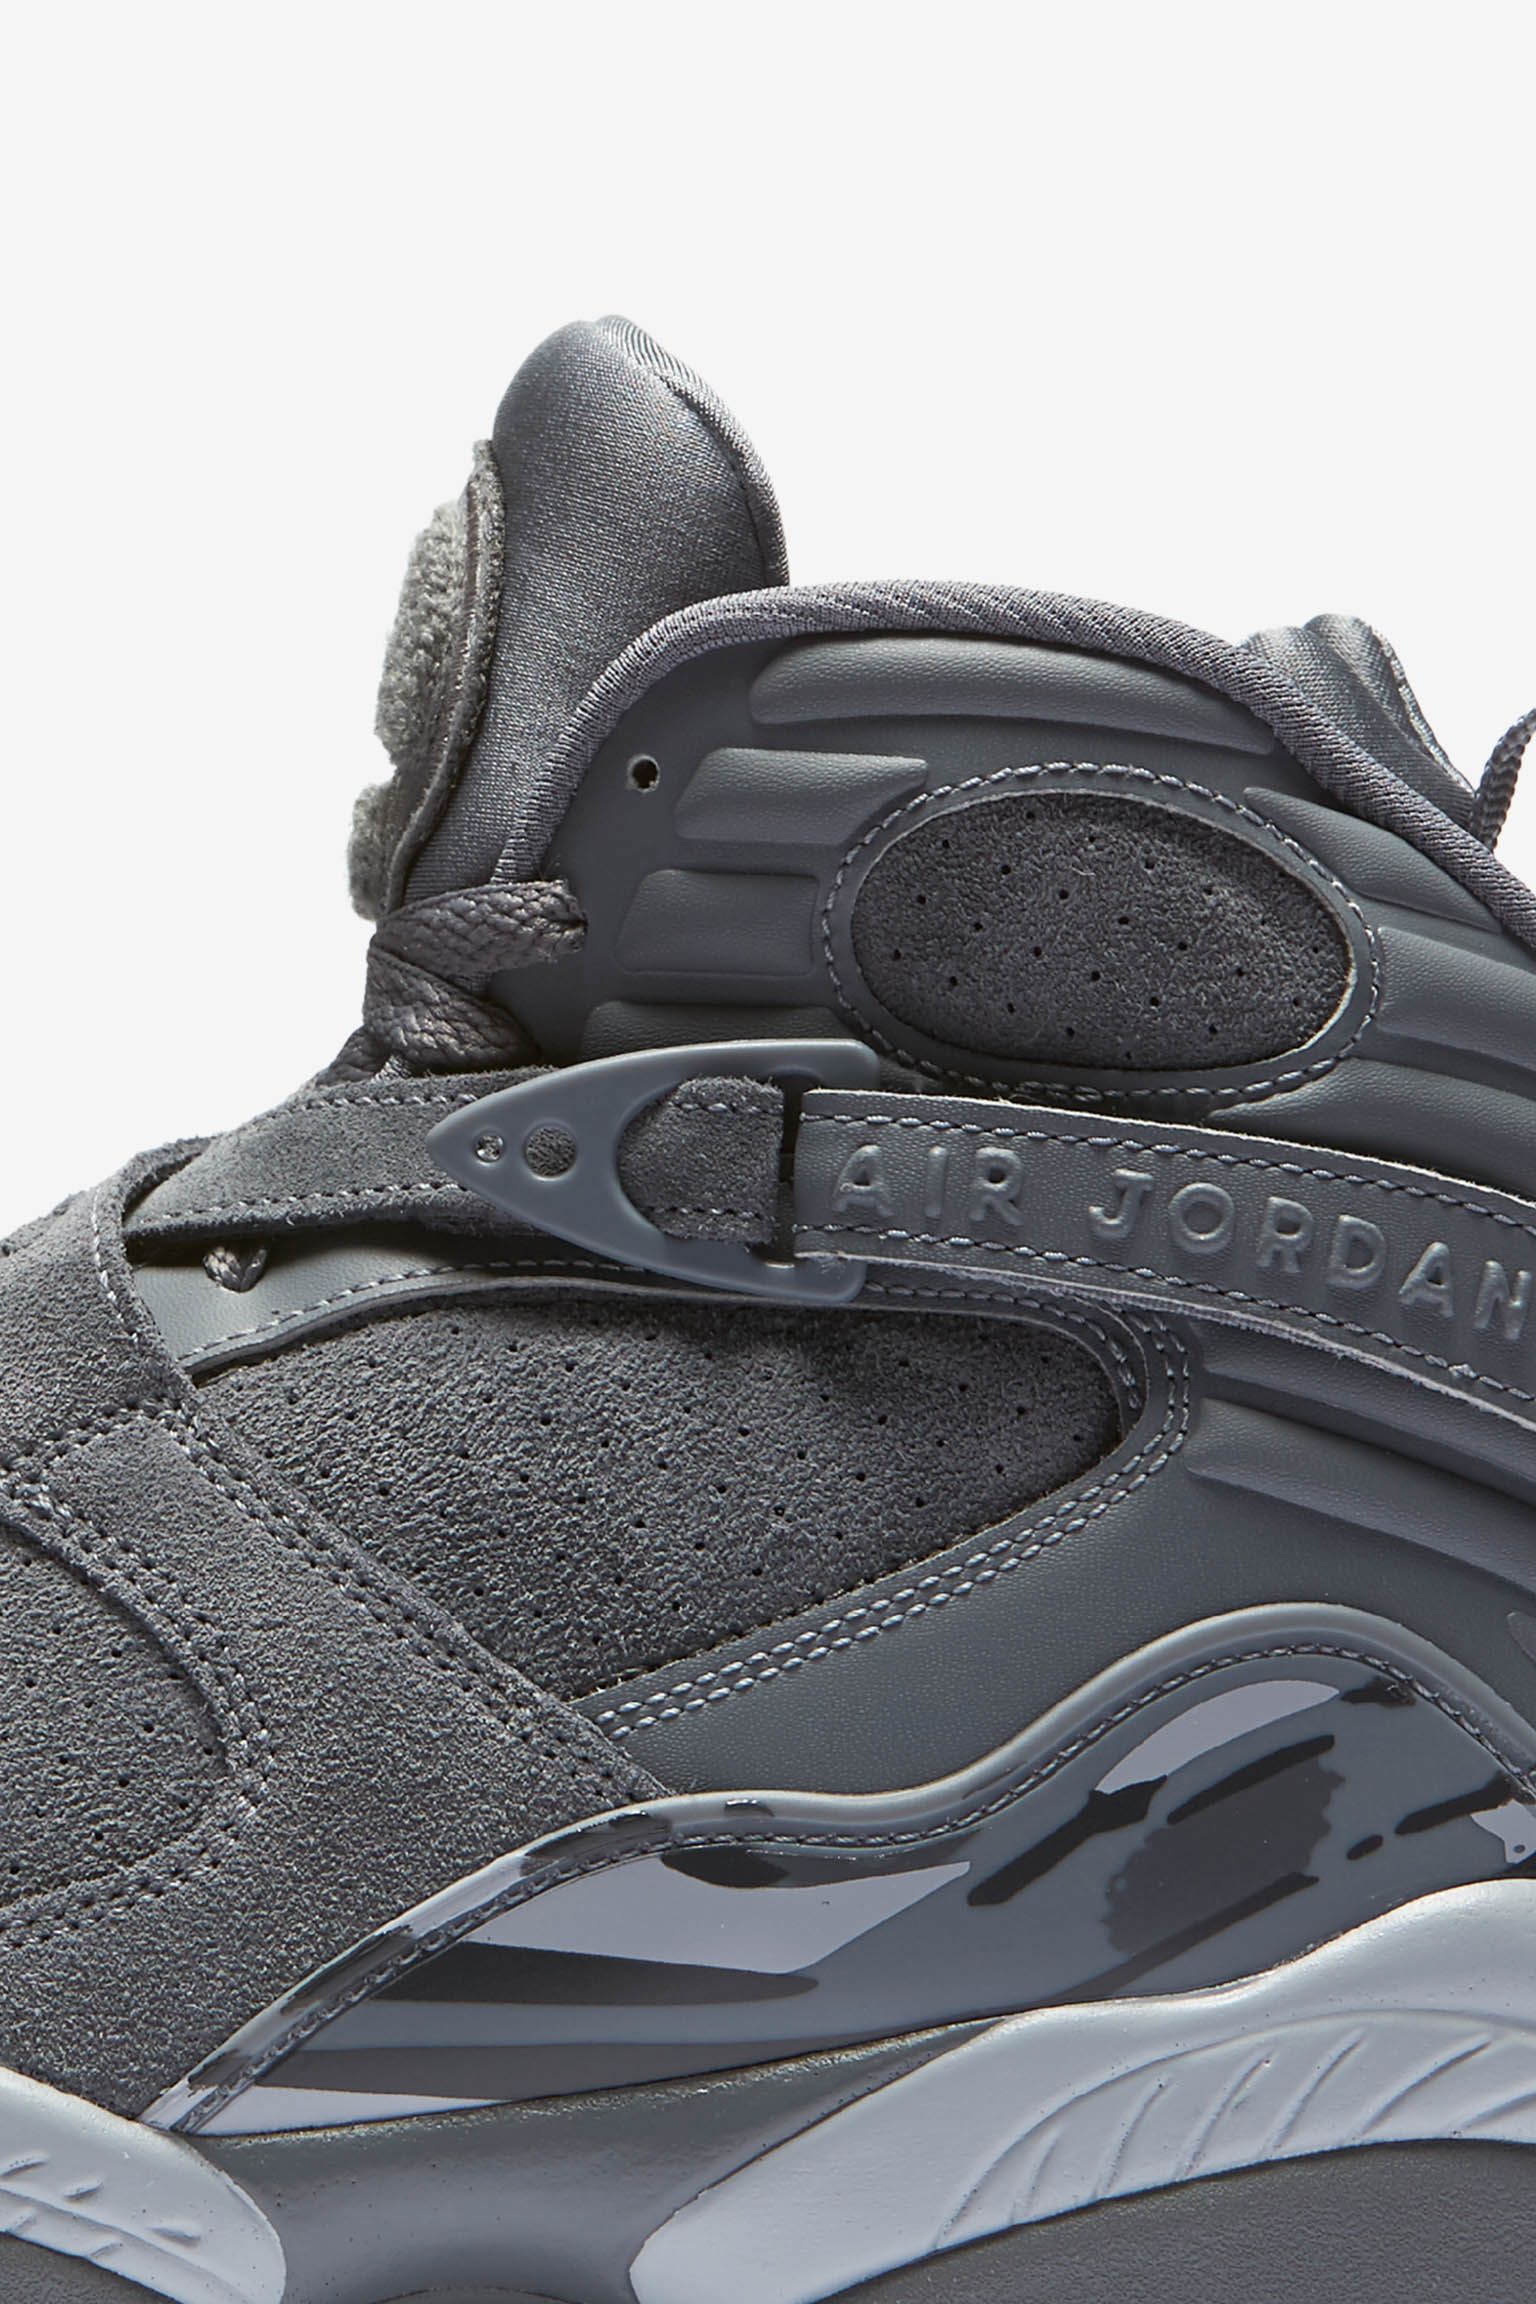 Air Jordan 8 Retro 'Cool Grey' Release Date. Nike SNKRS